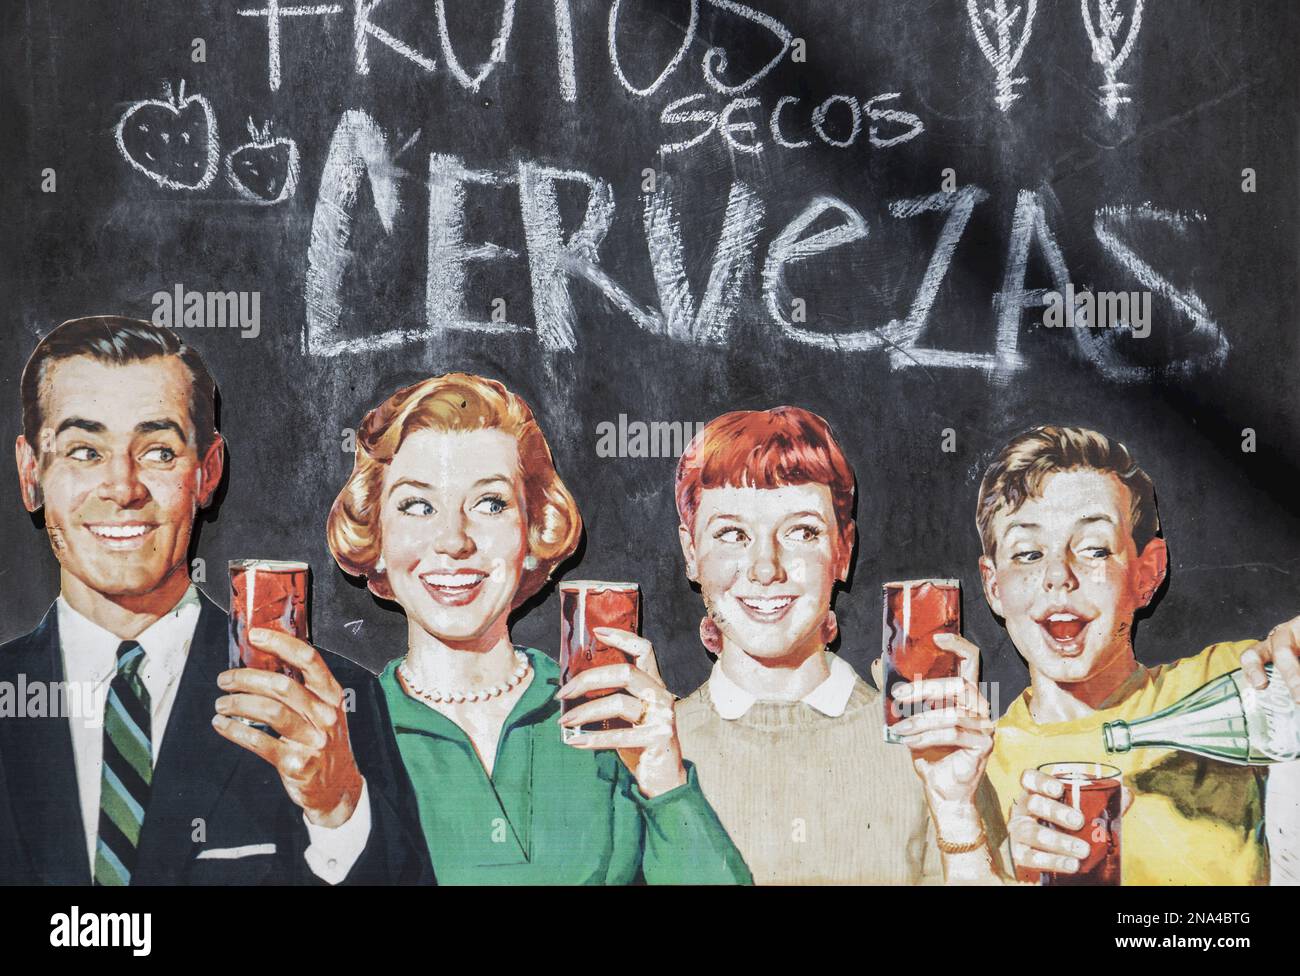 Publicité vintage pour une boisson au cola avec une famille debout et tenant des verres de la boisson, et un message sur la bière en espagnol sur la craie... Banque D'Images